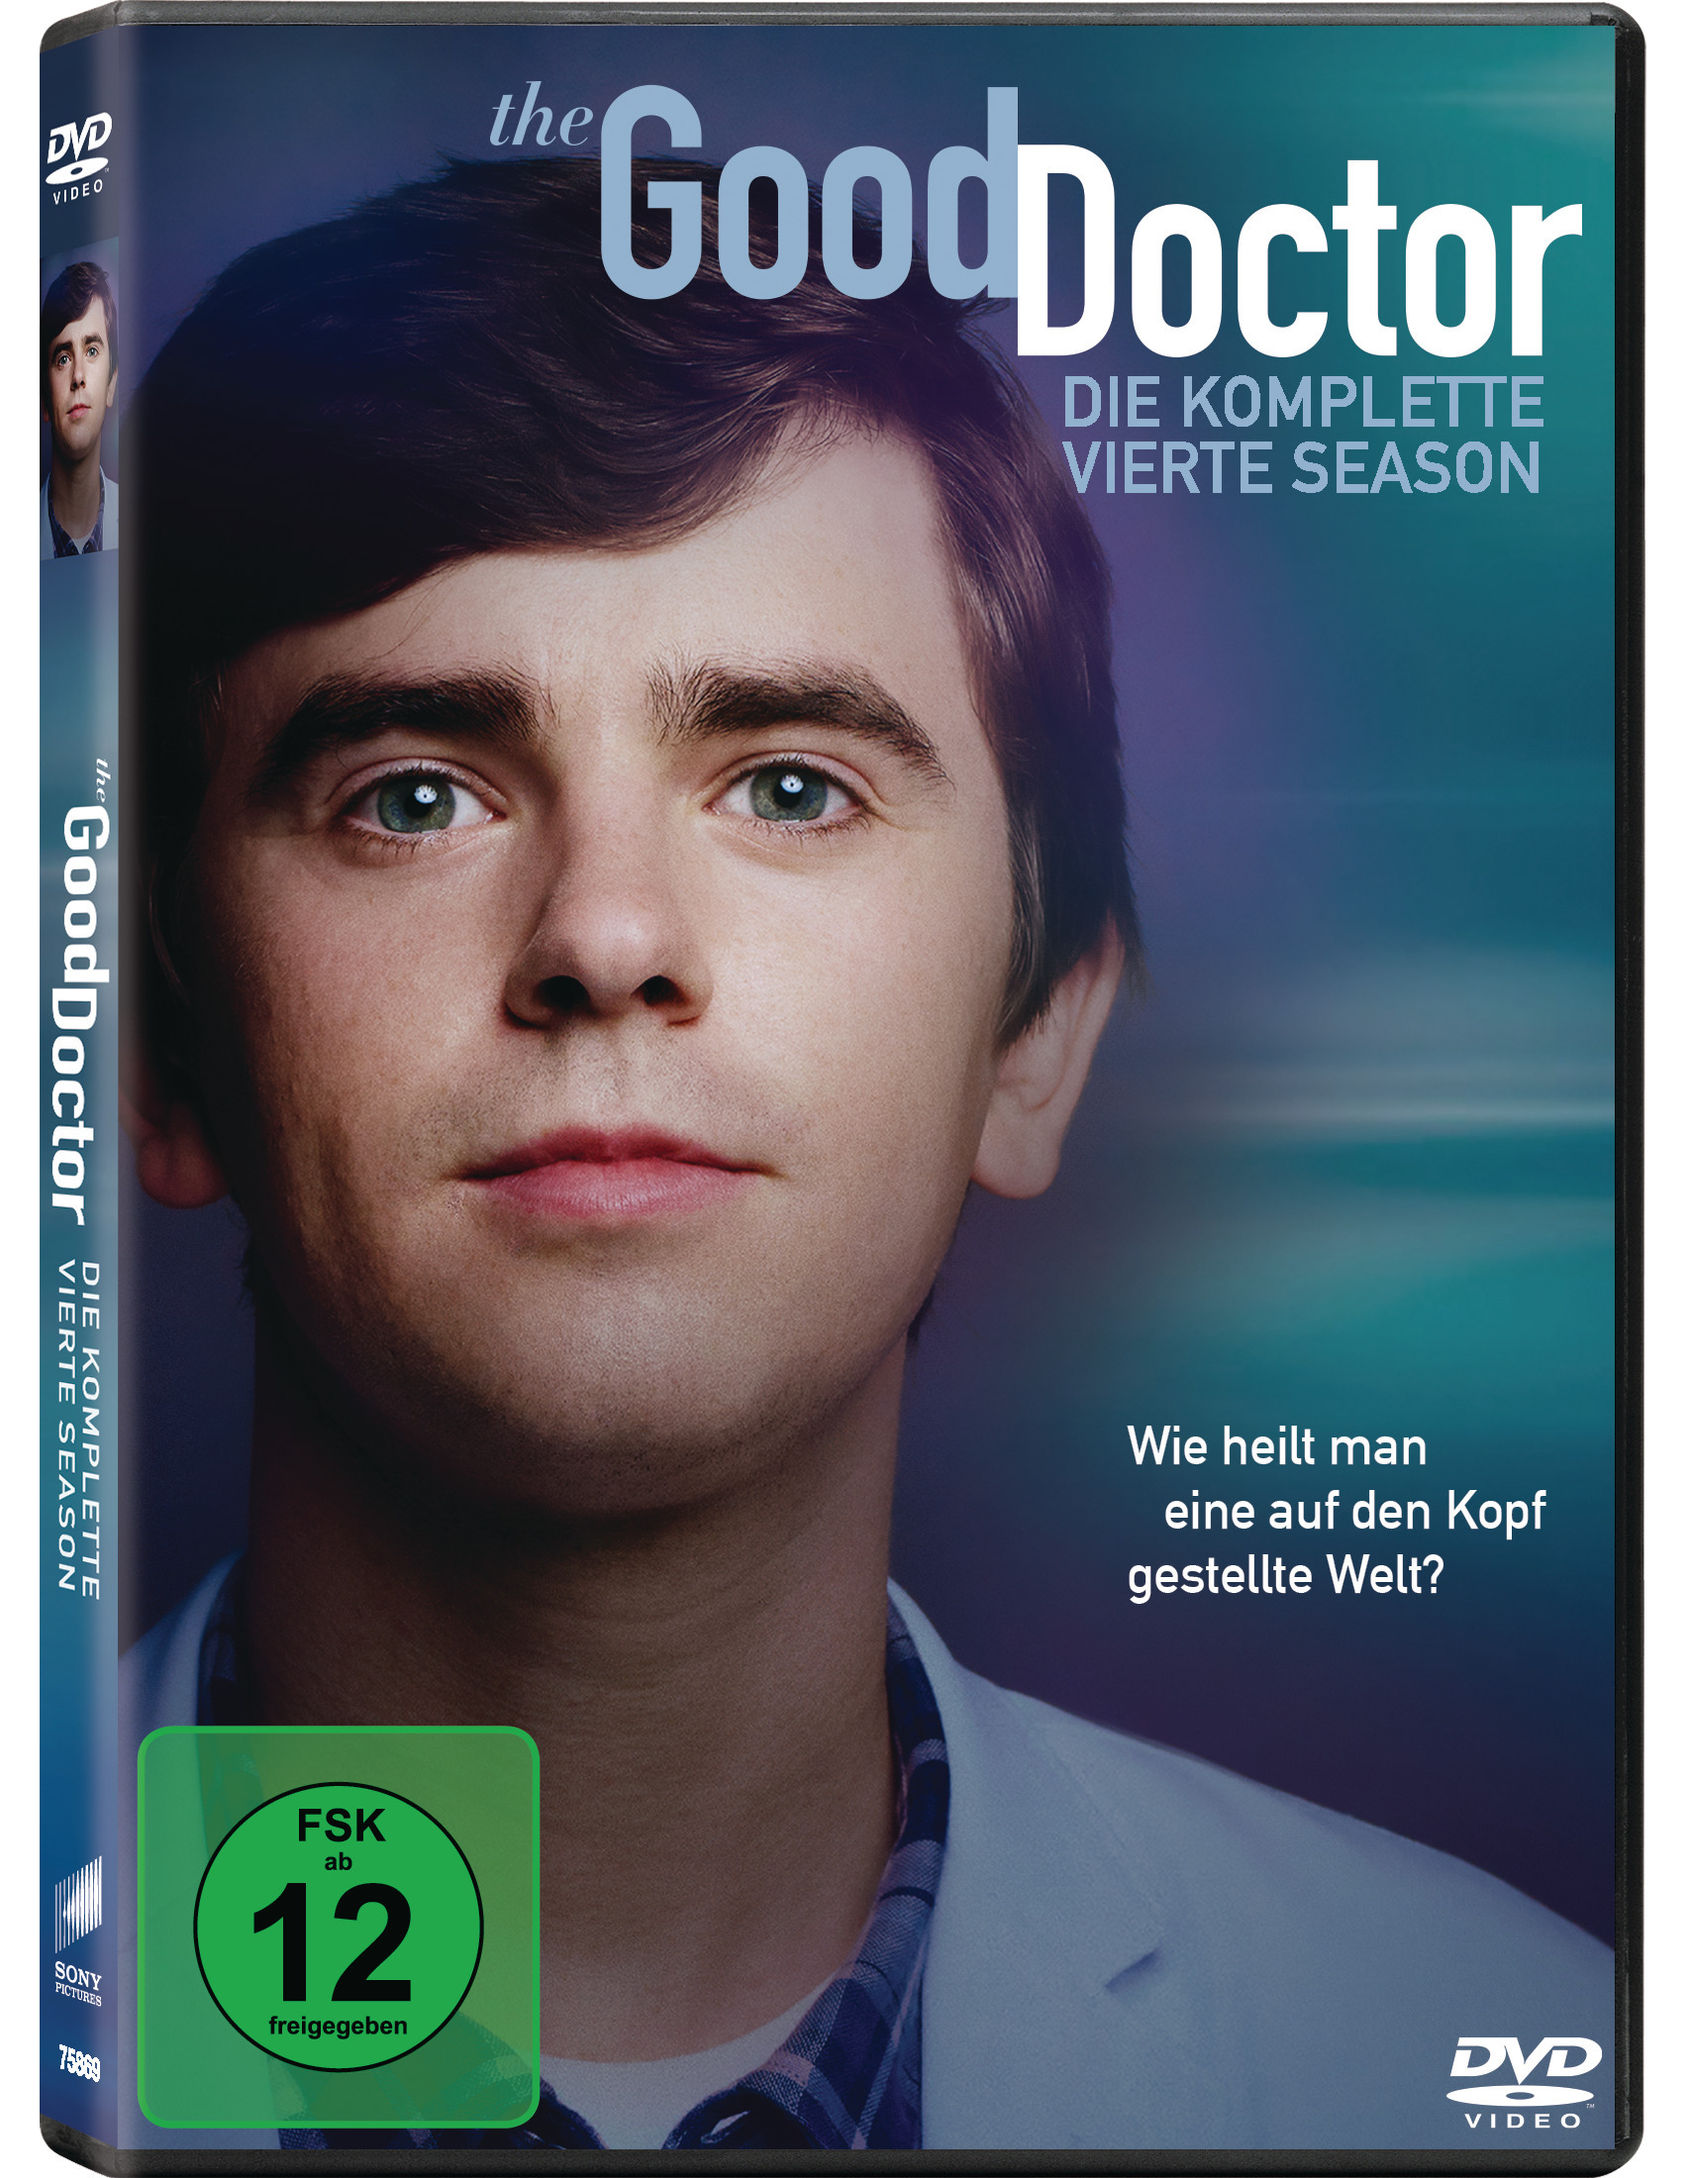 The Good Doctor - Staffel 4 DVD bei Weltbild.de bestellen